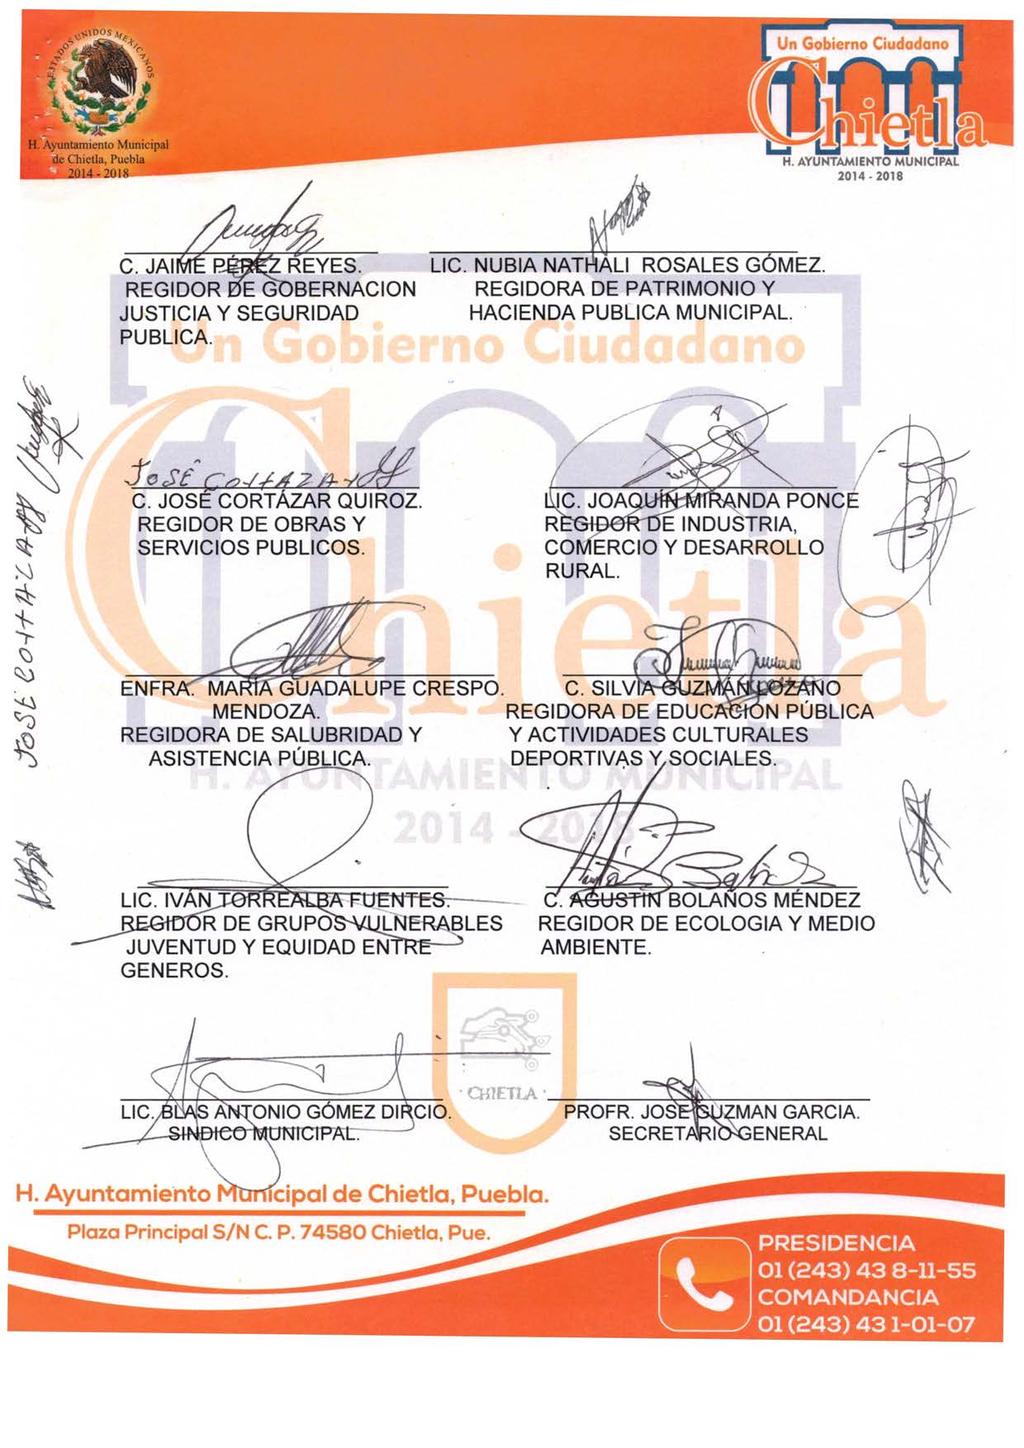 S H. Ayuntamiento Municipal de Chictia. Puebla 2014-2018 F1 2014-2018 C. JAI(vTÉ REYES. REGIDOR 'E GOBERNACION JUSTICIA Y SEGURIDAD PUBLICA. LIC. NUBIA NATHÁLI ROSALES GÓMEZ.